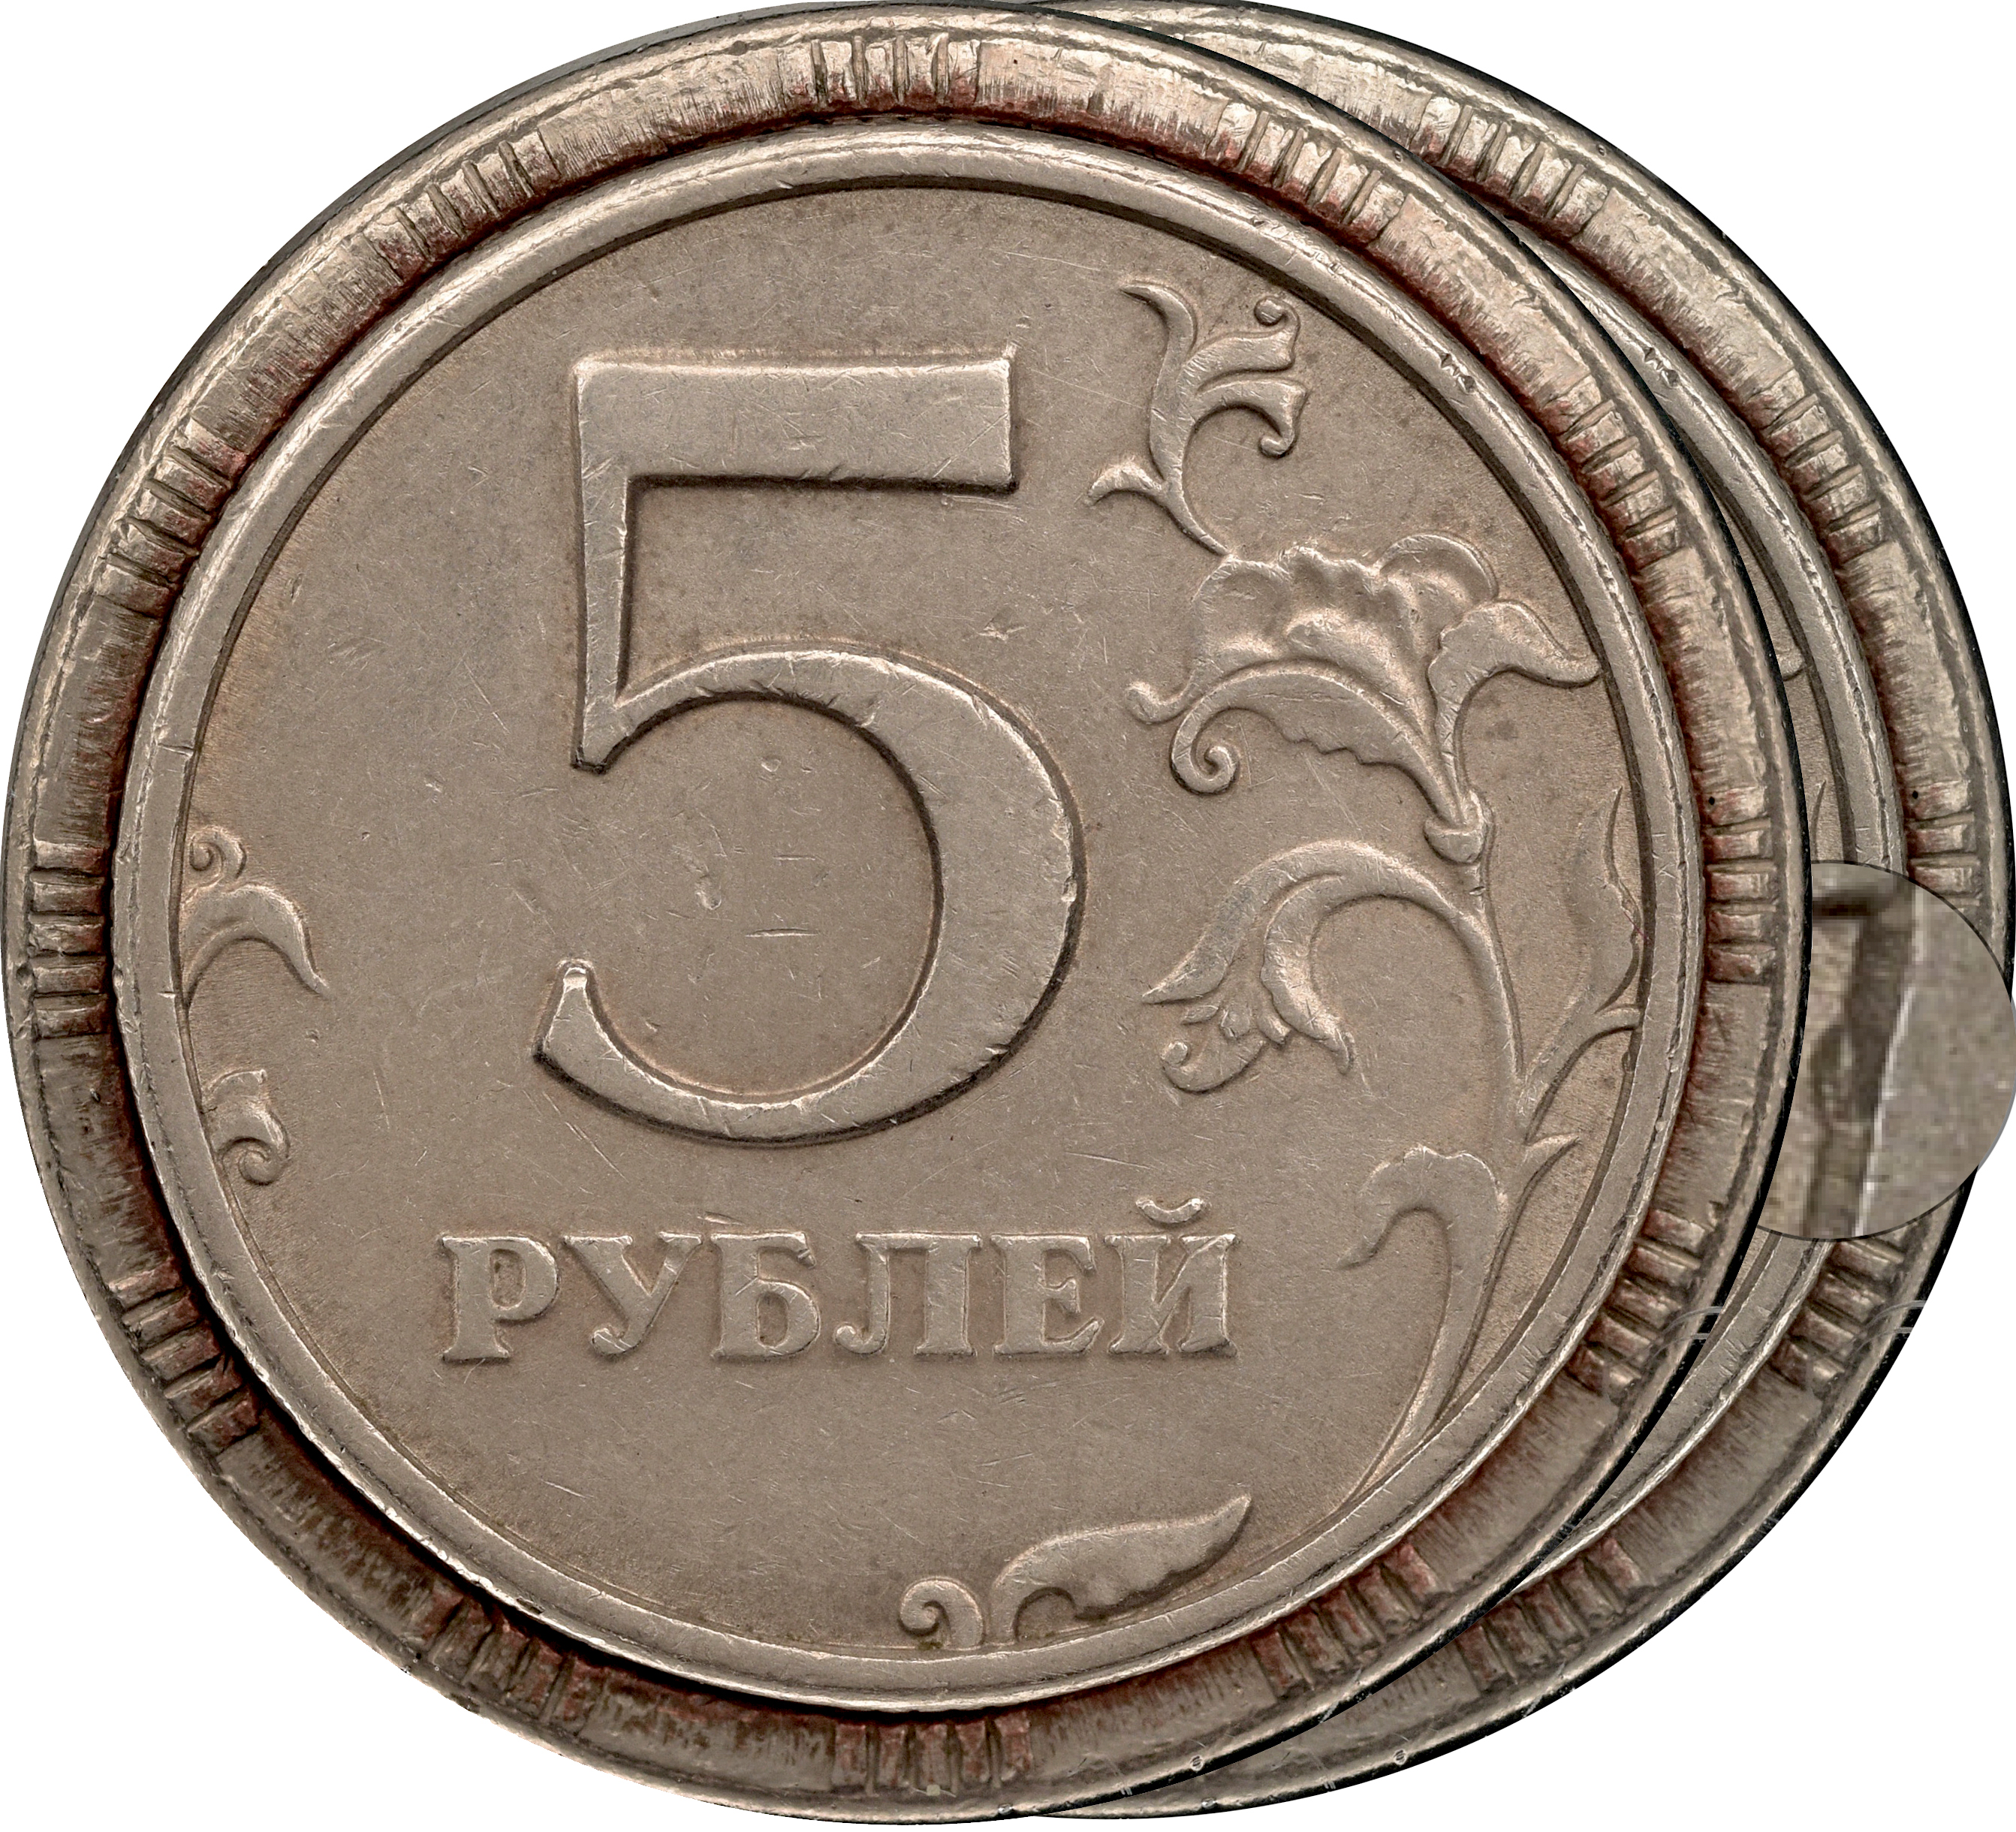 5 рублей 3 копейки. 5р. Пятачки монета Юбилейный. Пятачок монета современной. Монеты рубли пятаки десятки.